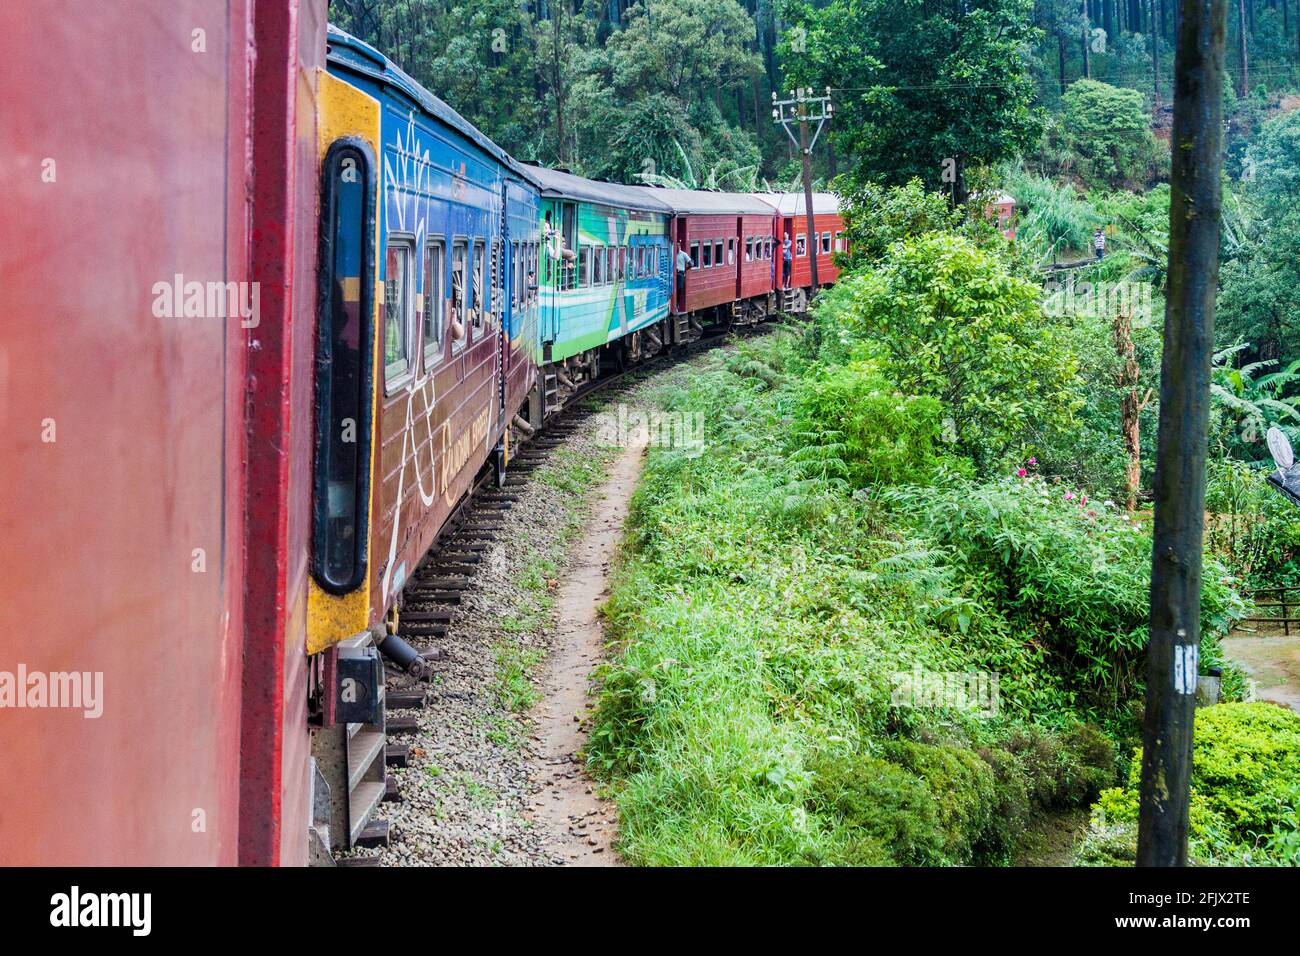 NANU OYA, SRI LANKA - JULY 16, 2016: Local train rides through a rural landscape near Nanu Oya village, Sri Lanka Stock Photo